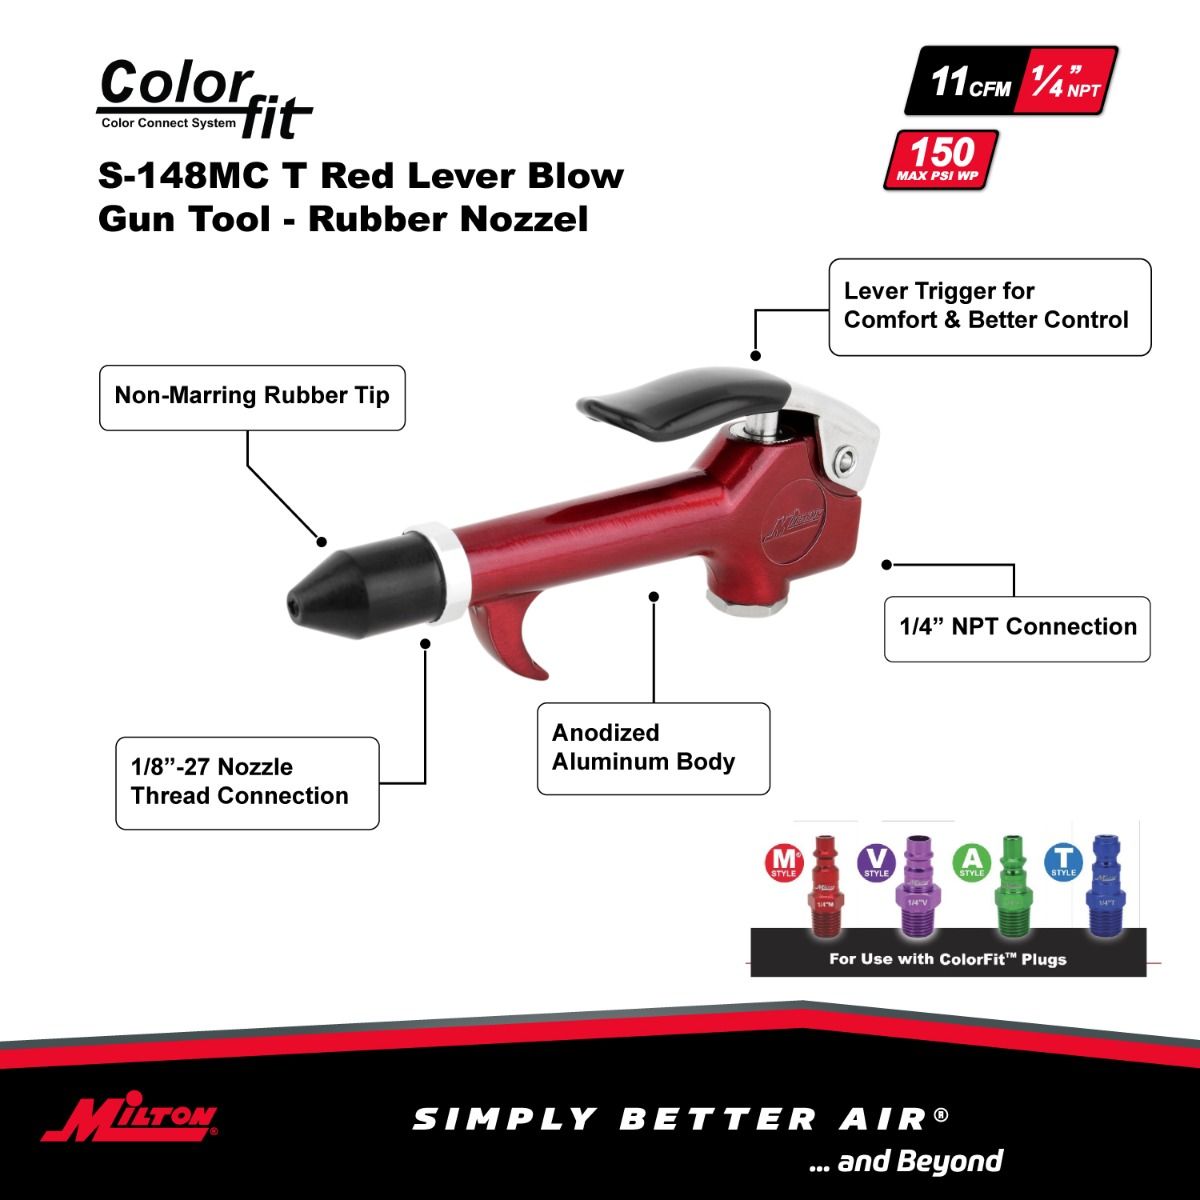 Copy of Milton® COLORFIT® S-148MC 1/4" NPT Lever Blow Gun Tool | Milton Direct